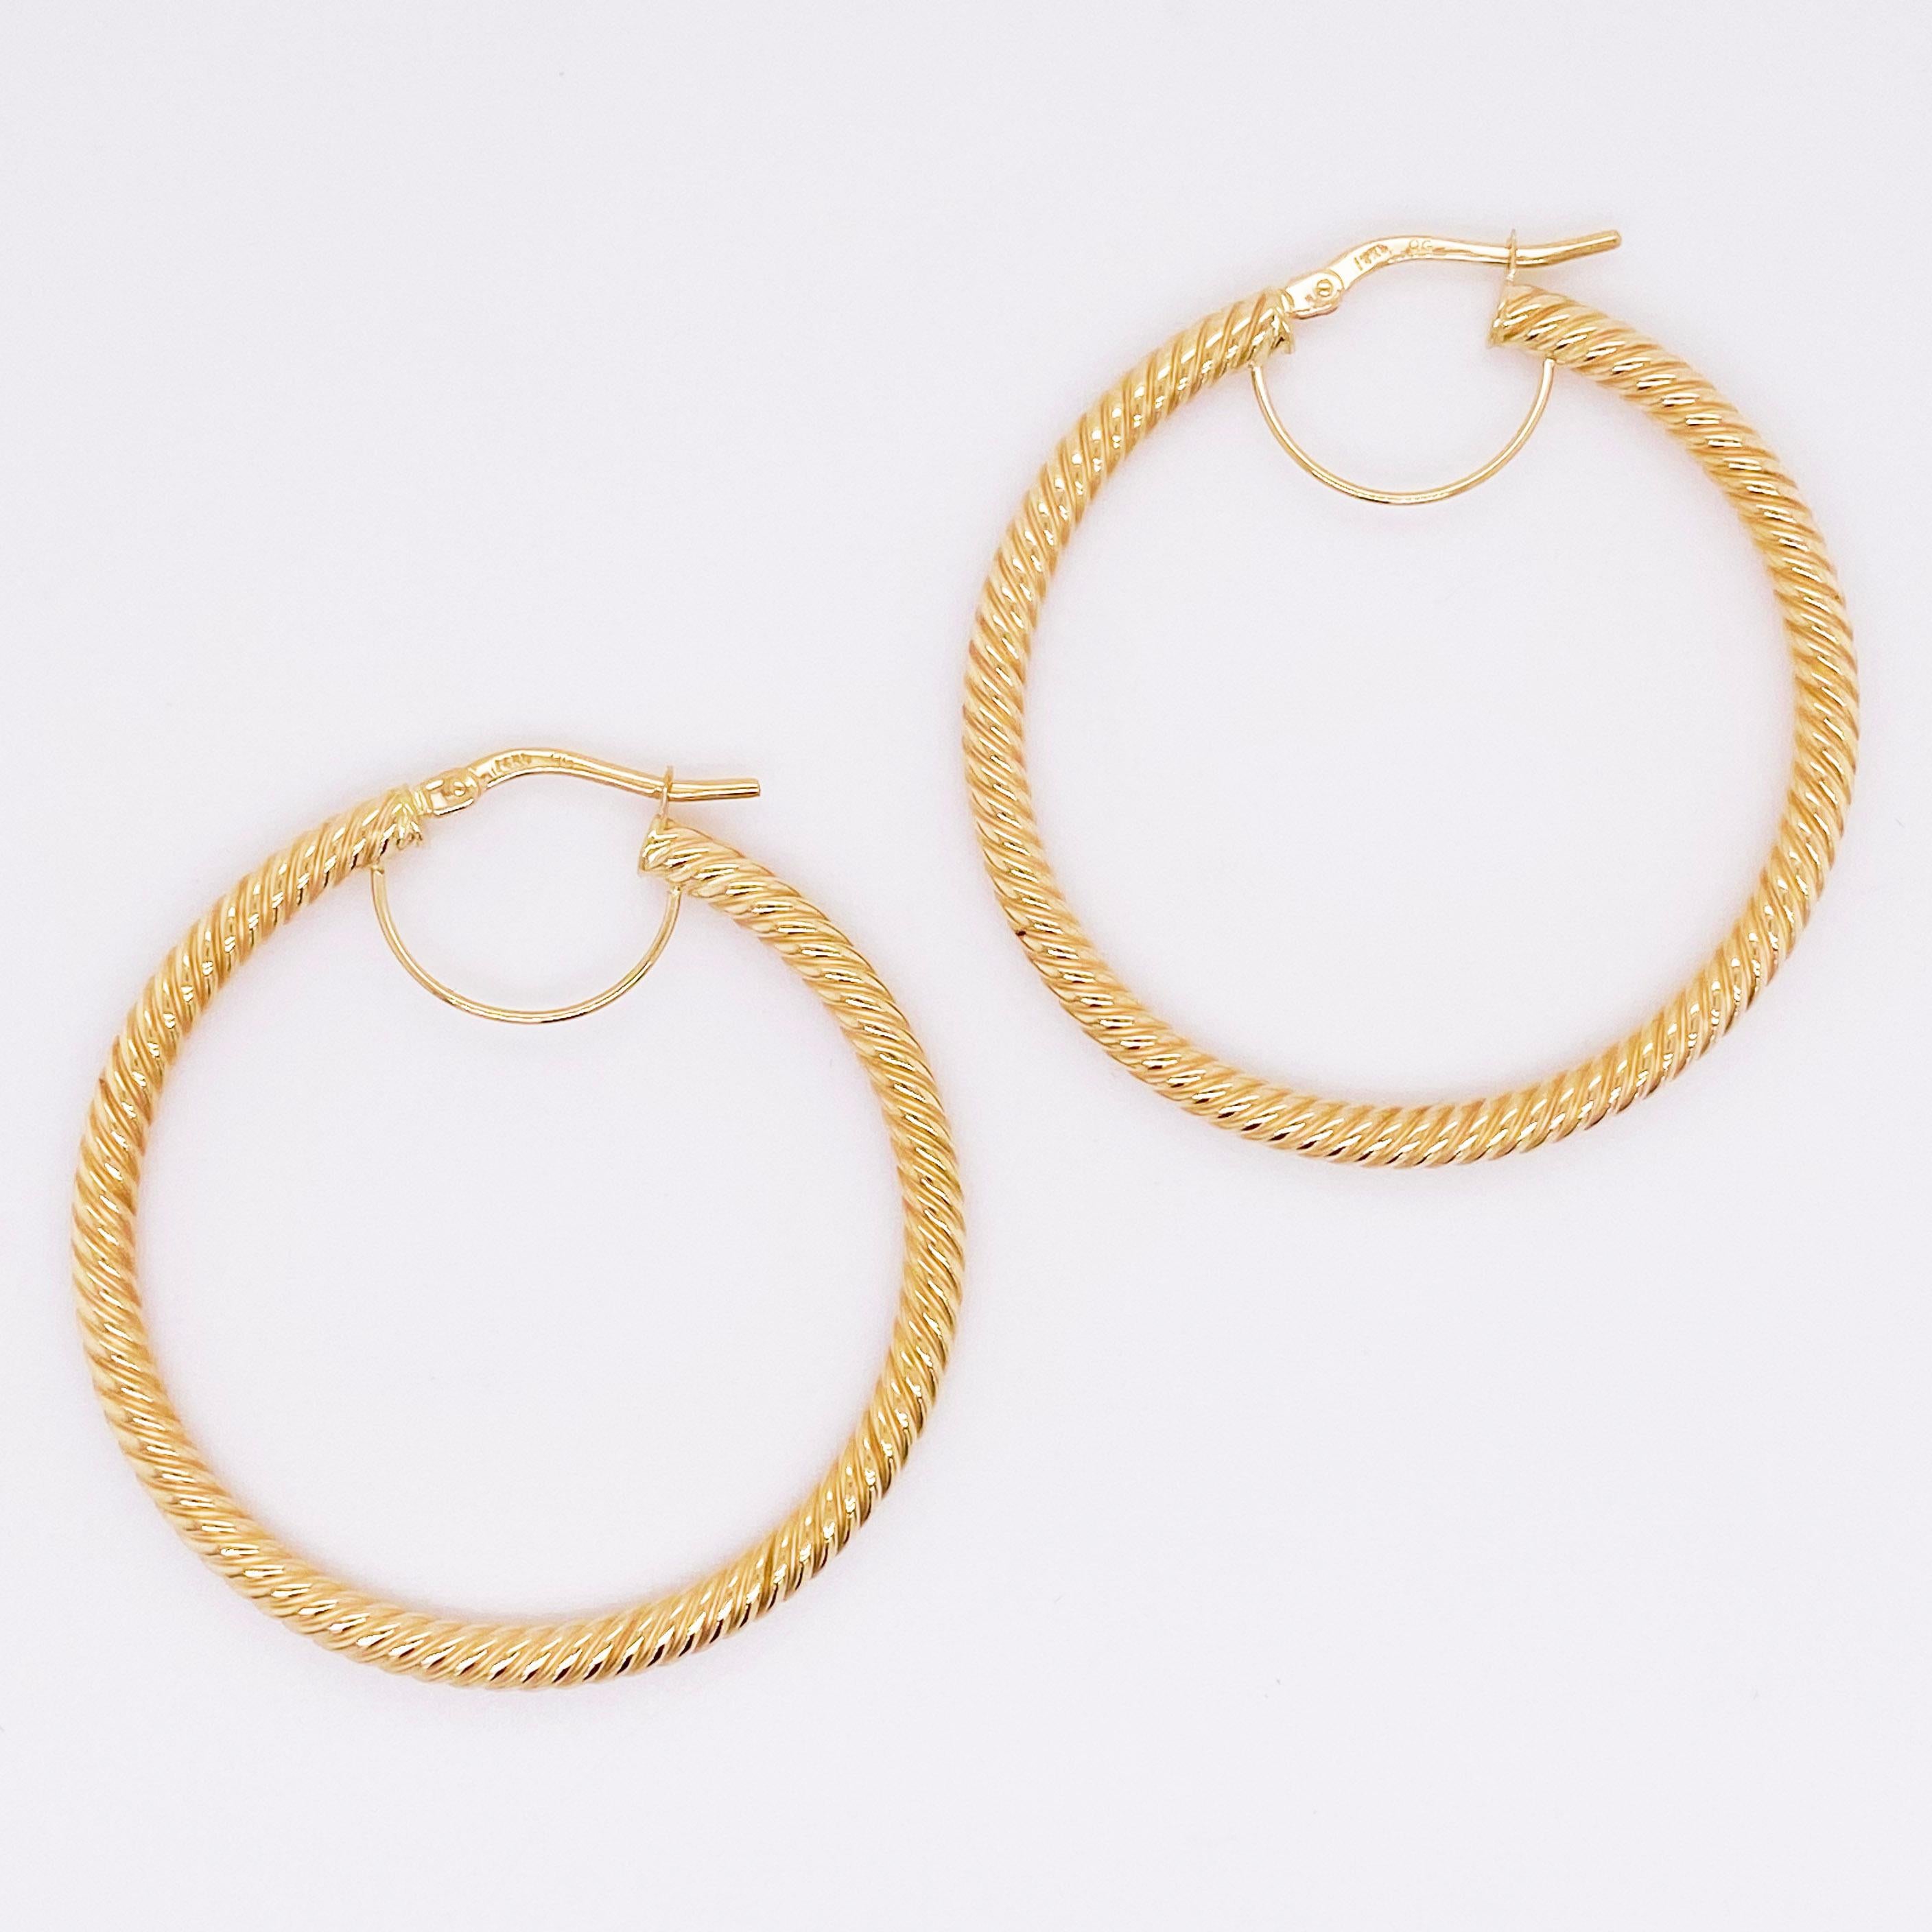 Modern Gold Hoop Earrings, 14 Karat Twisted Hoops, 14 Karat Yellow Gold, Medium Hoops